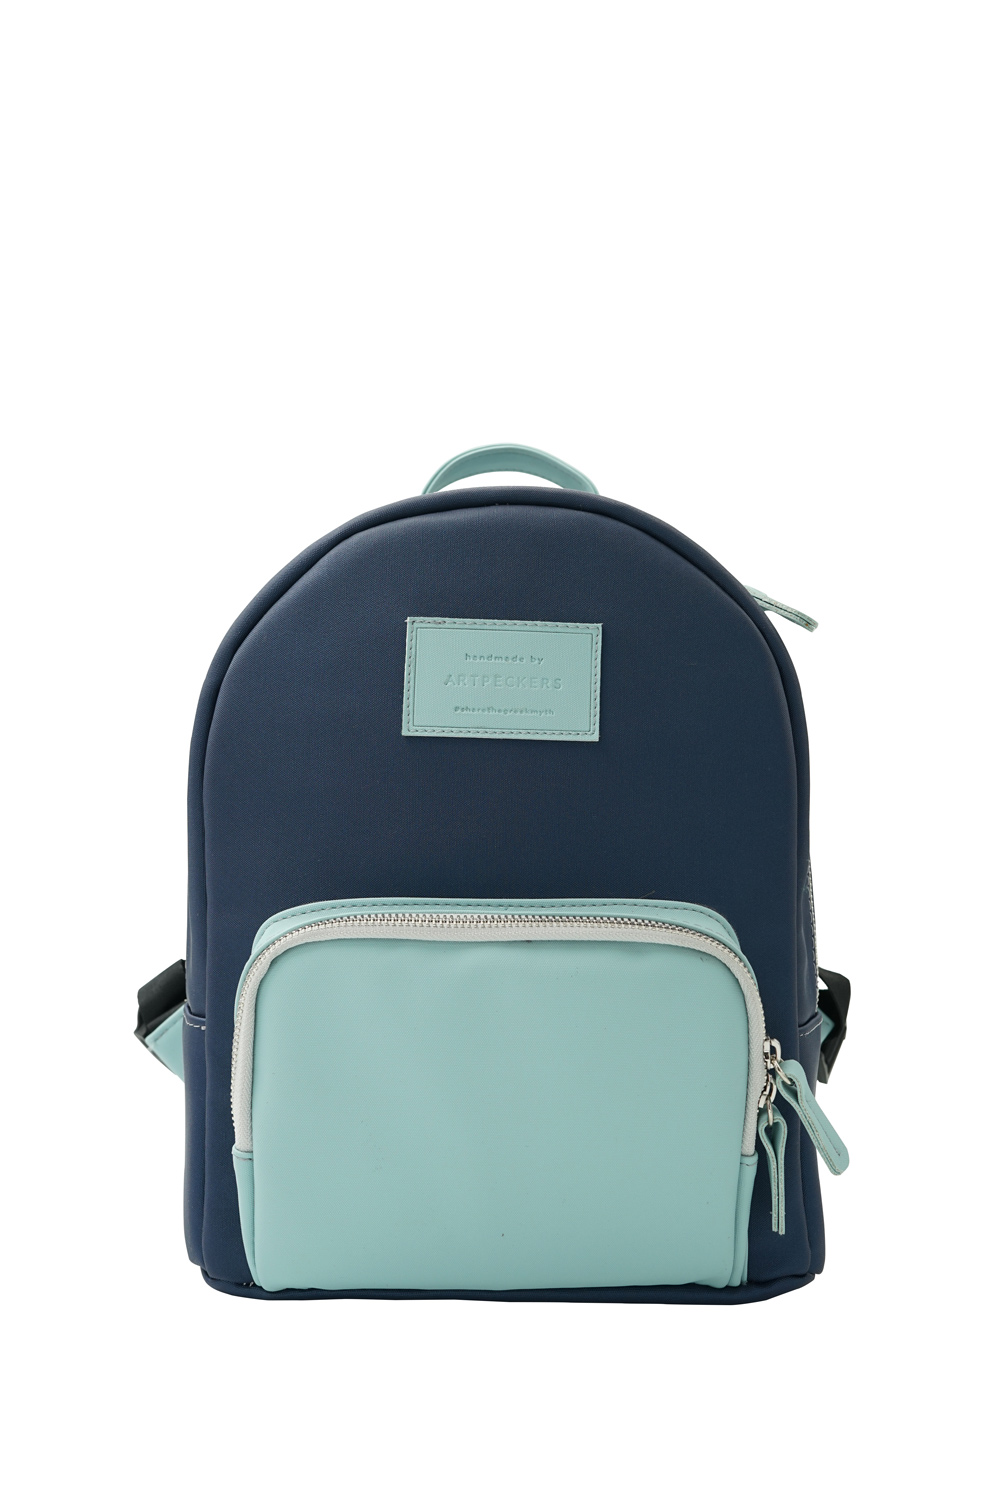 Apollo (blue) mini backpack - Artpeckers